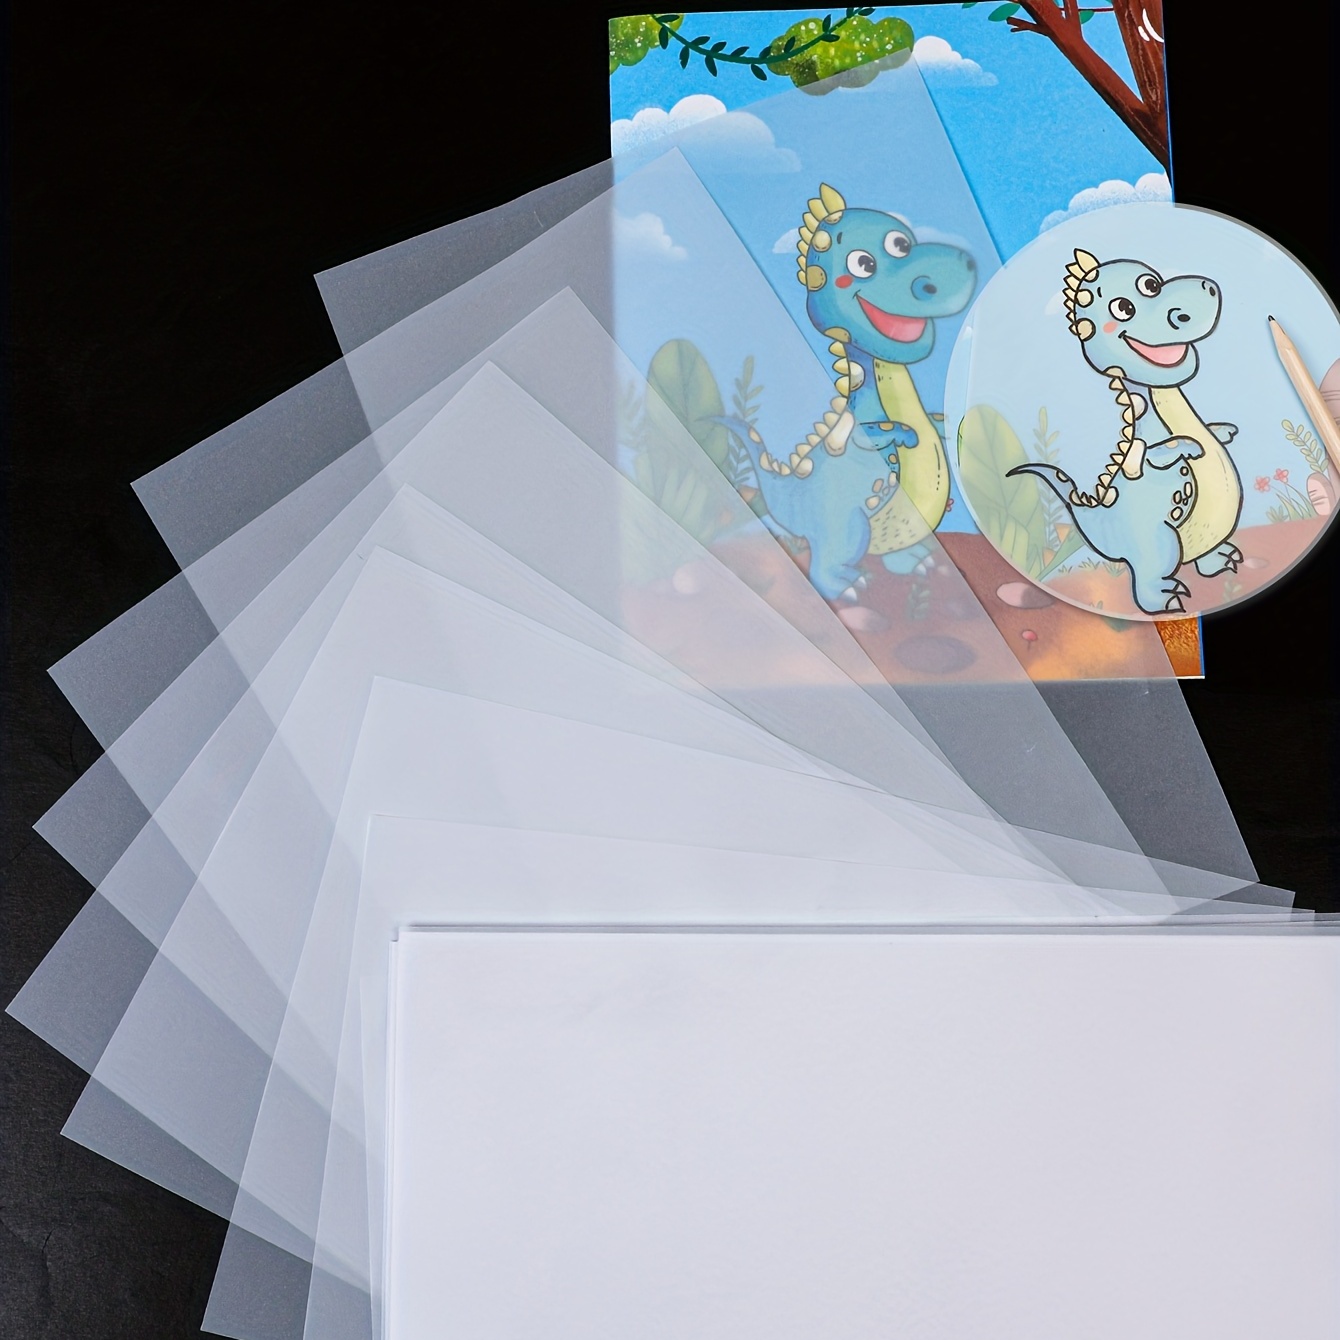 Acrylic Painting Paper Pad Corot Art Supply Premium Extra - Temu Switzerland